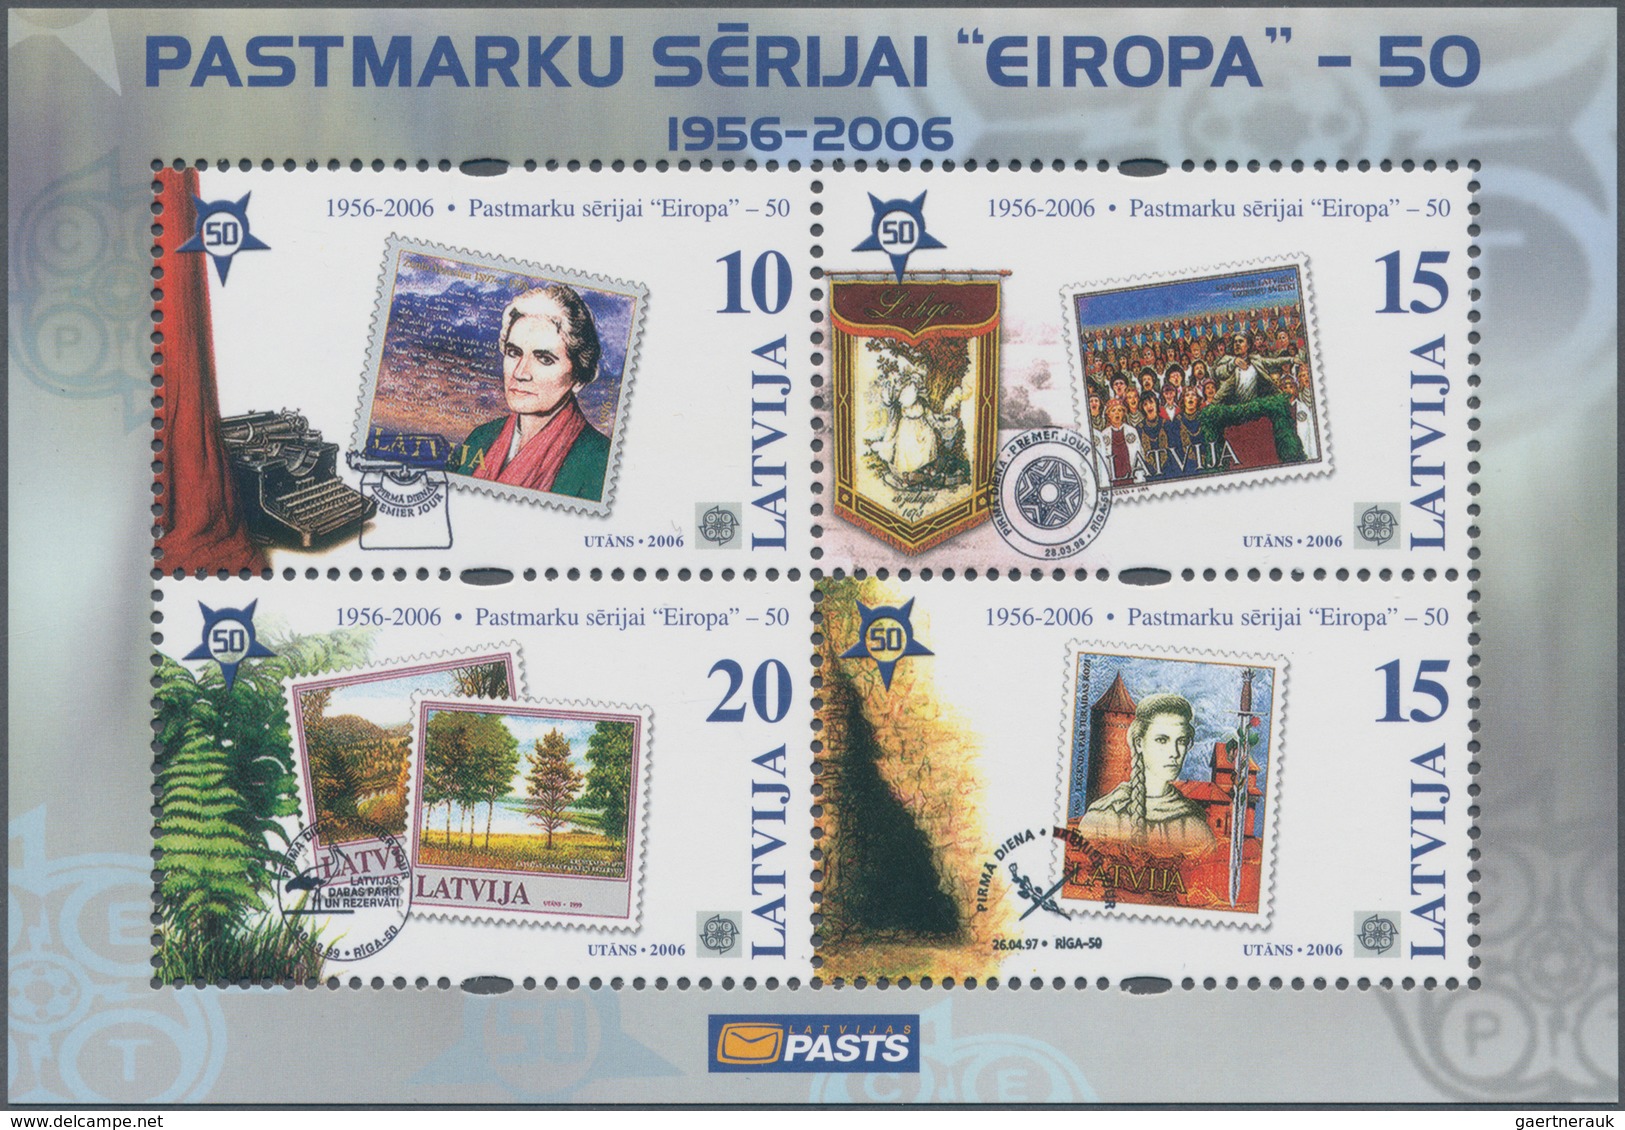 28604 Europa: 2006, "50 JAHRE EUROPAMARKEN". Posten mit den Ausgaben von 13 Ländern, postfrisch und je 1.0